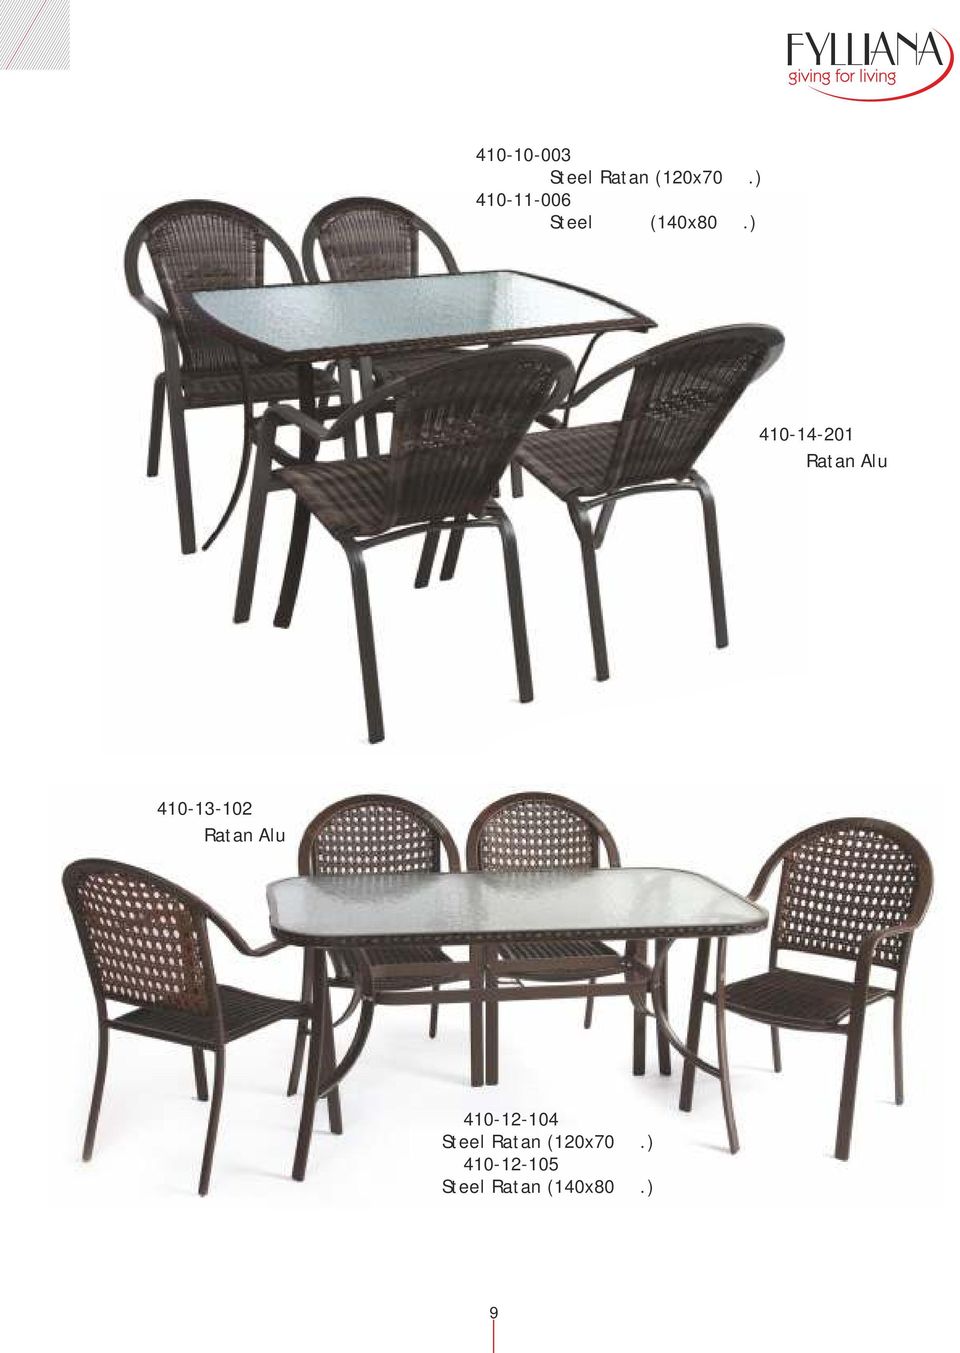 ) 410-14-201 Καρέκλα Ratan Alu καφέ 410-13-102 Καρέκλα Ratan